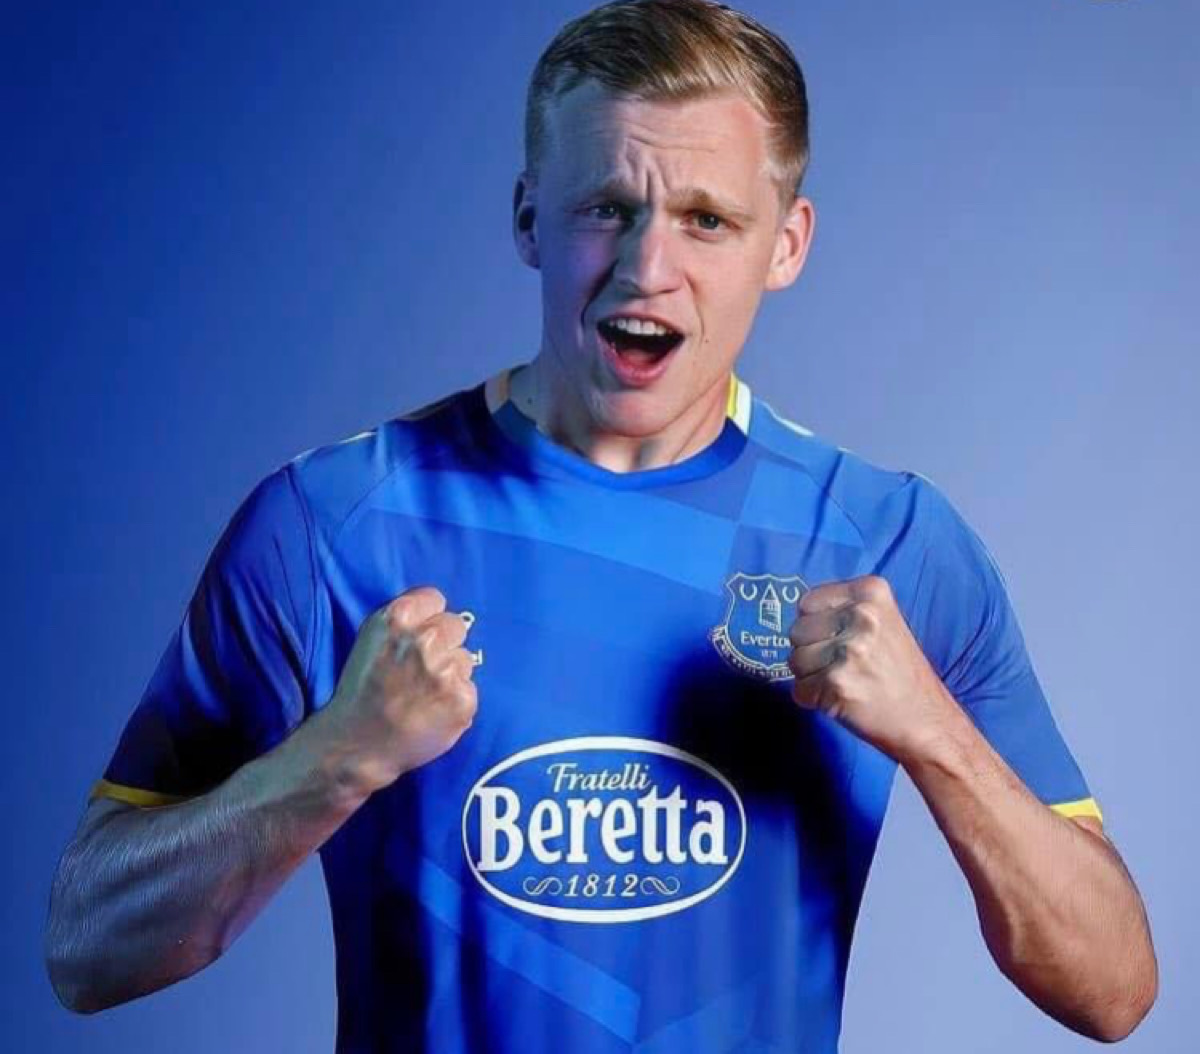 Van de Beek quyết định chuyển tới Everton theo một bản hợp đồng cho mượn